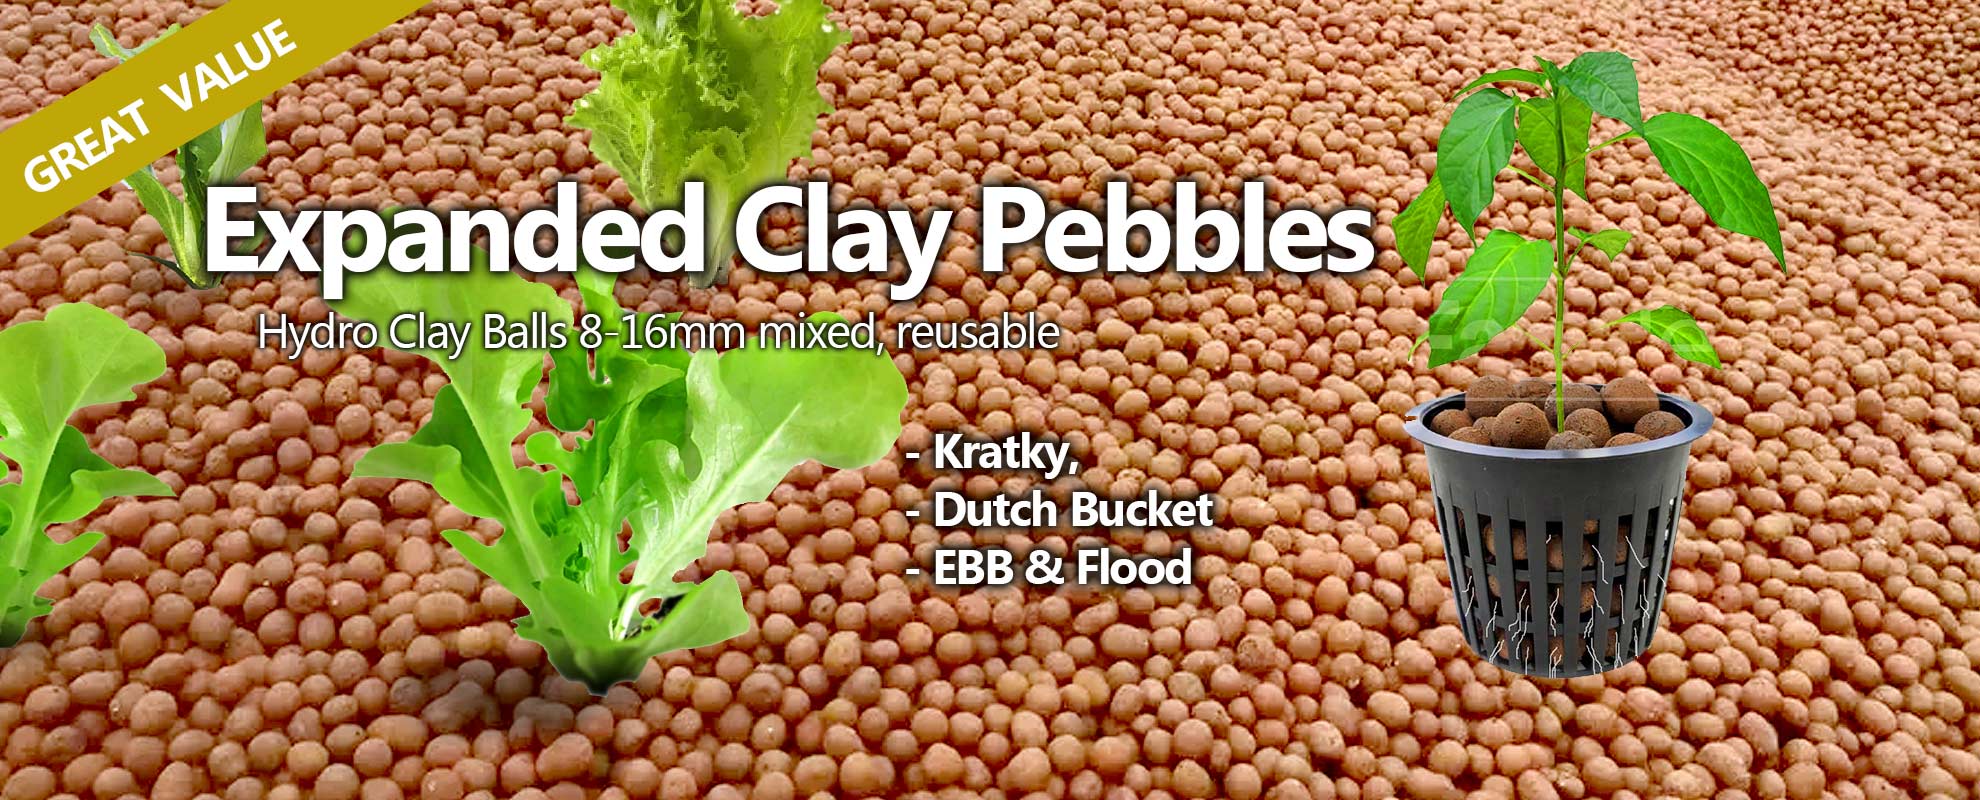 Farmtek Expanded CLay Pebbles